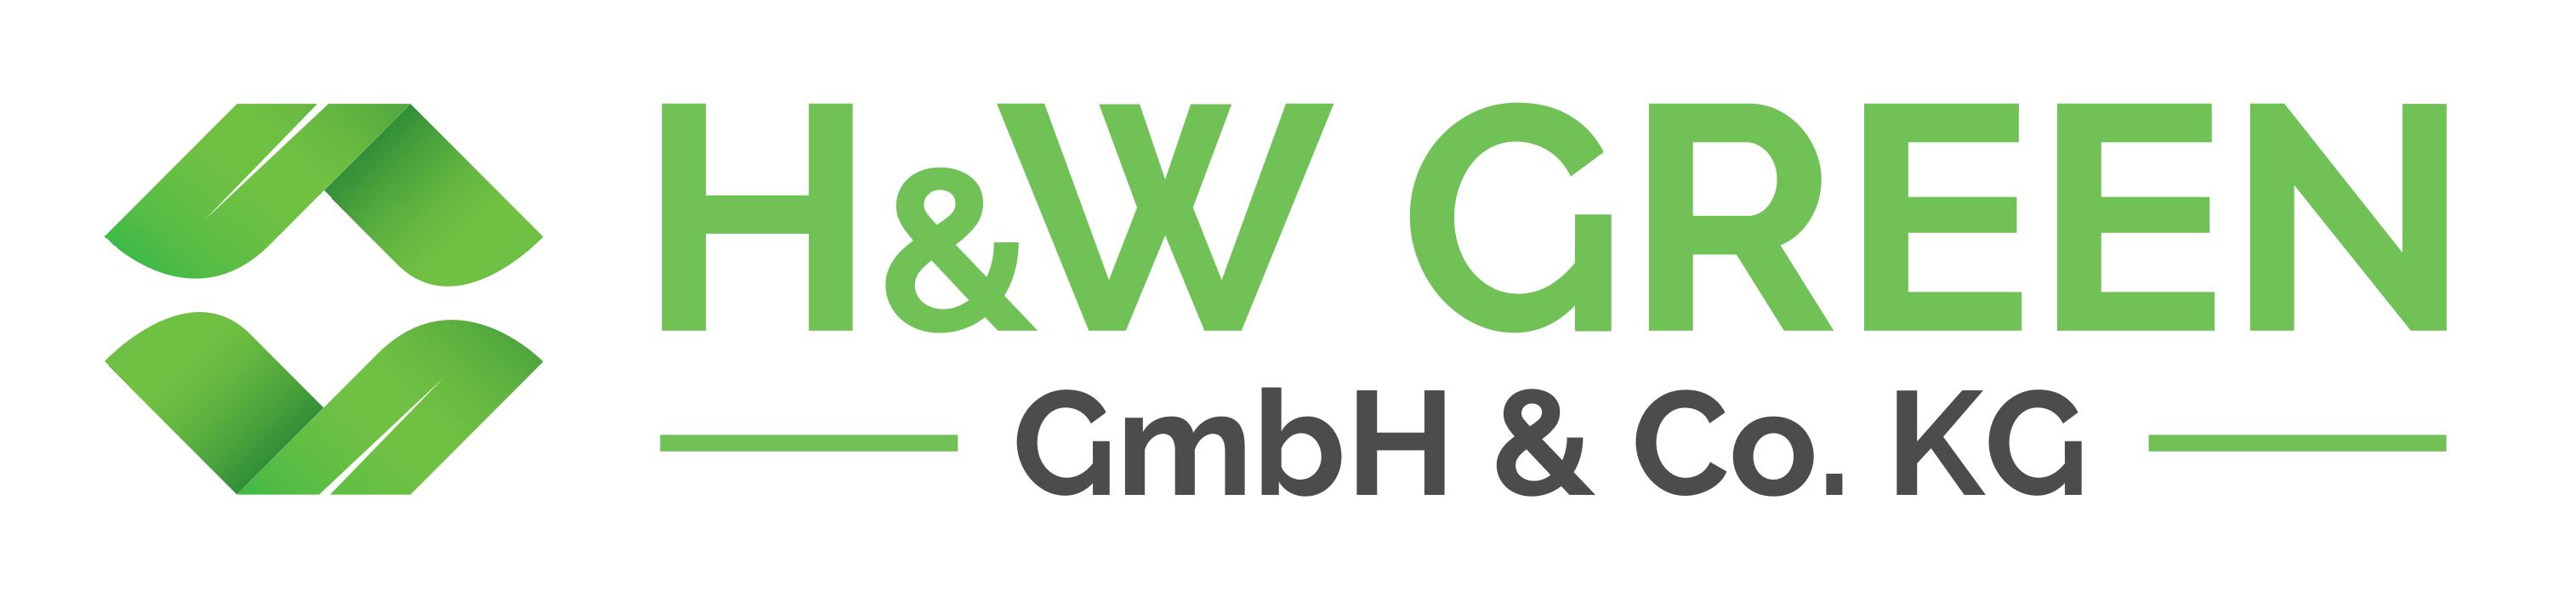 Logo von H&W GREEN GmbH & Co. KG